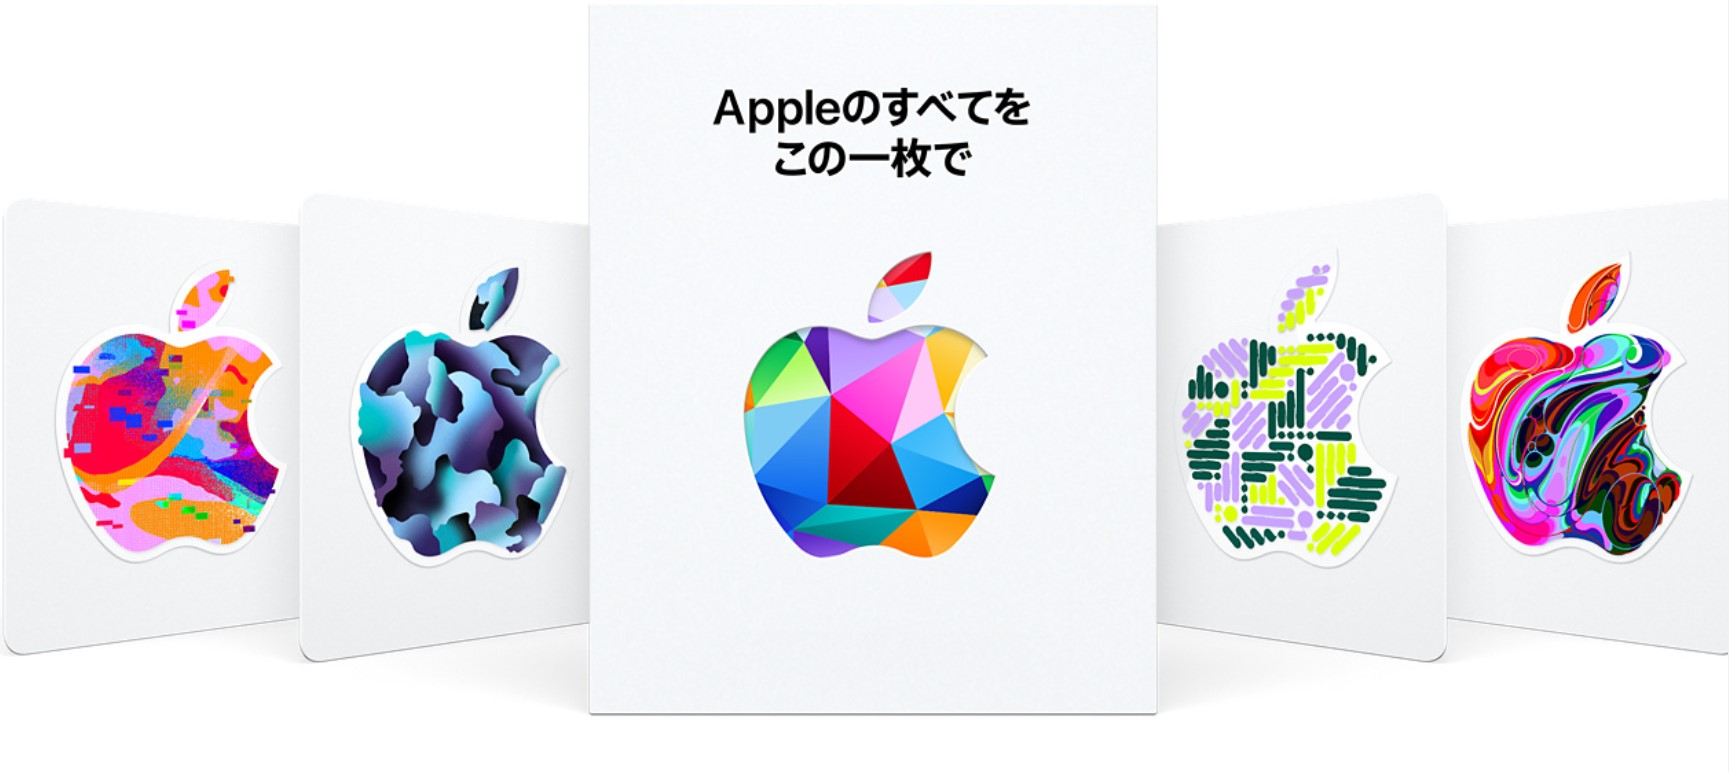 アップル 物理製品でもアプリ購入にも使える Appleギフトカード を販売開始 Engadget 日本版